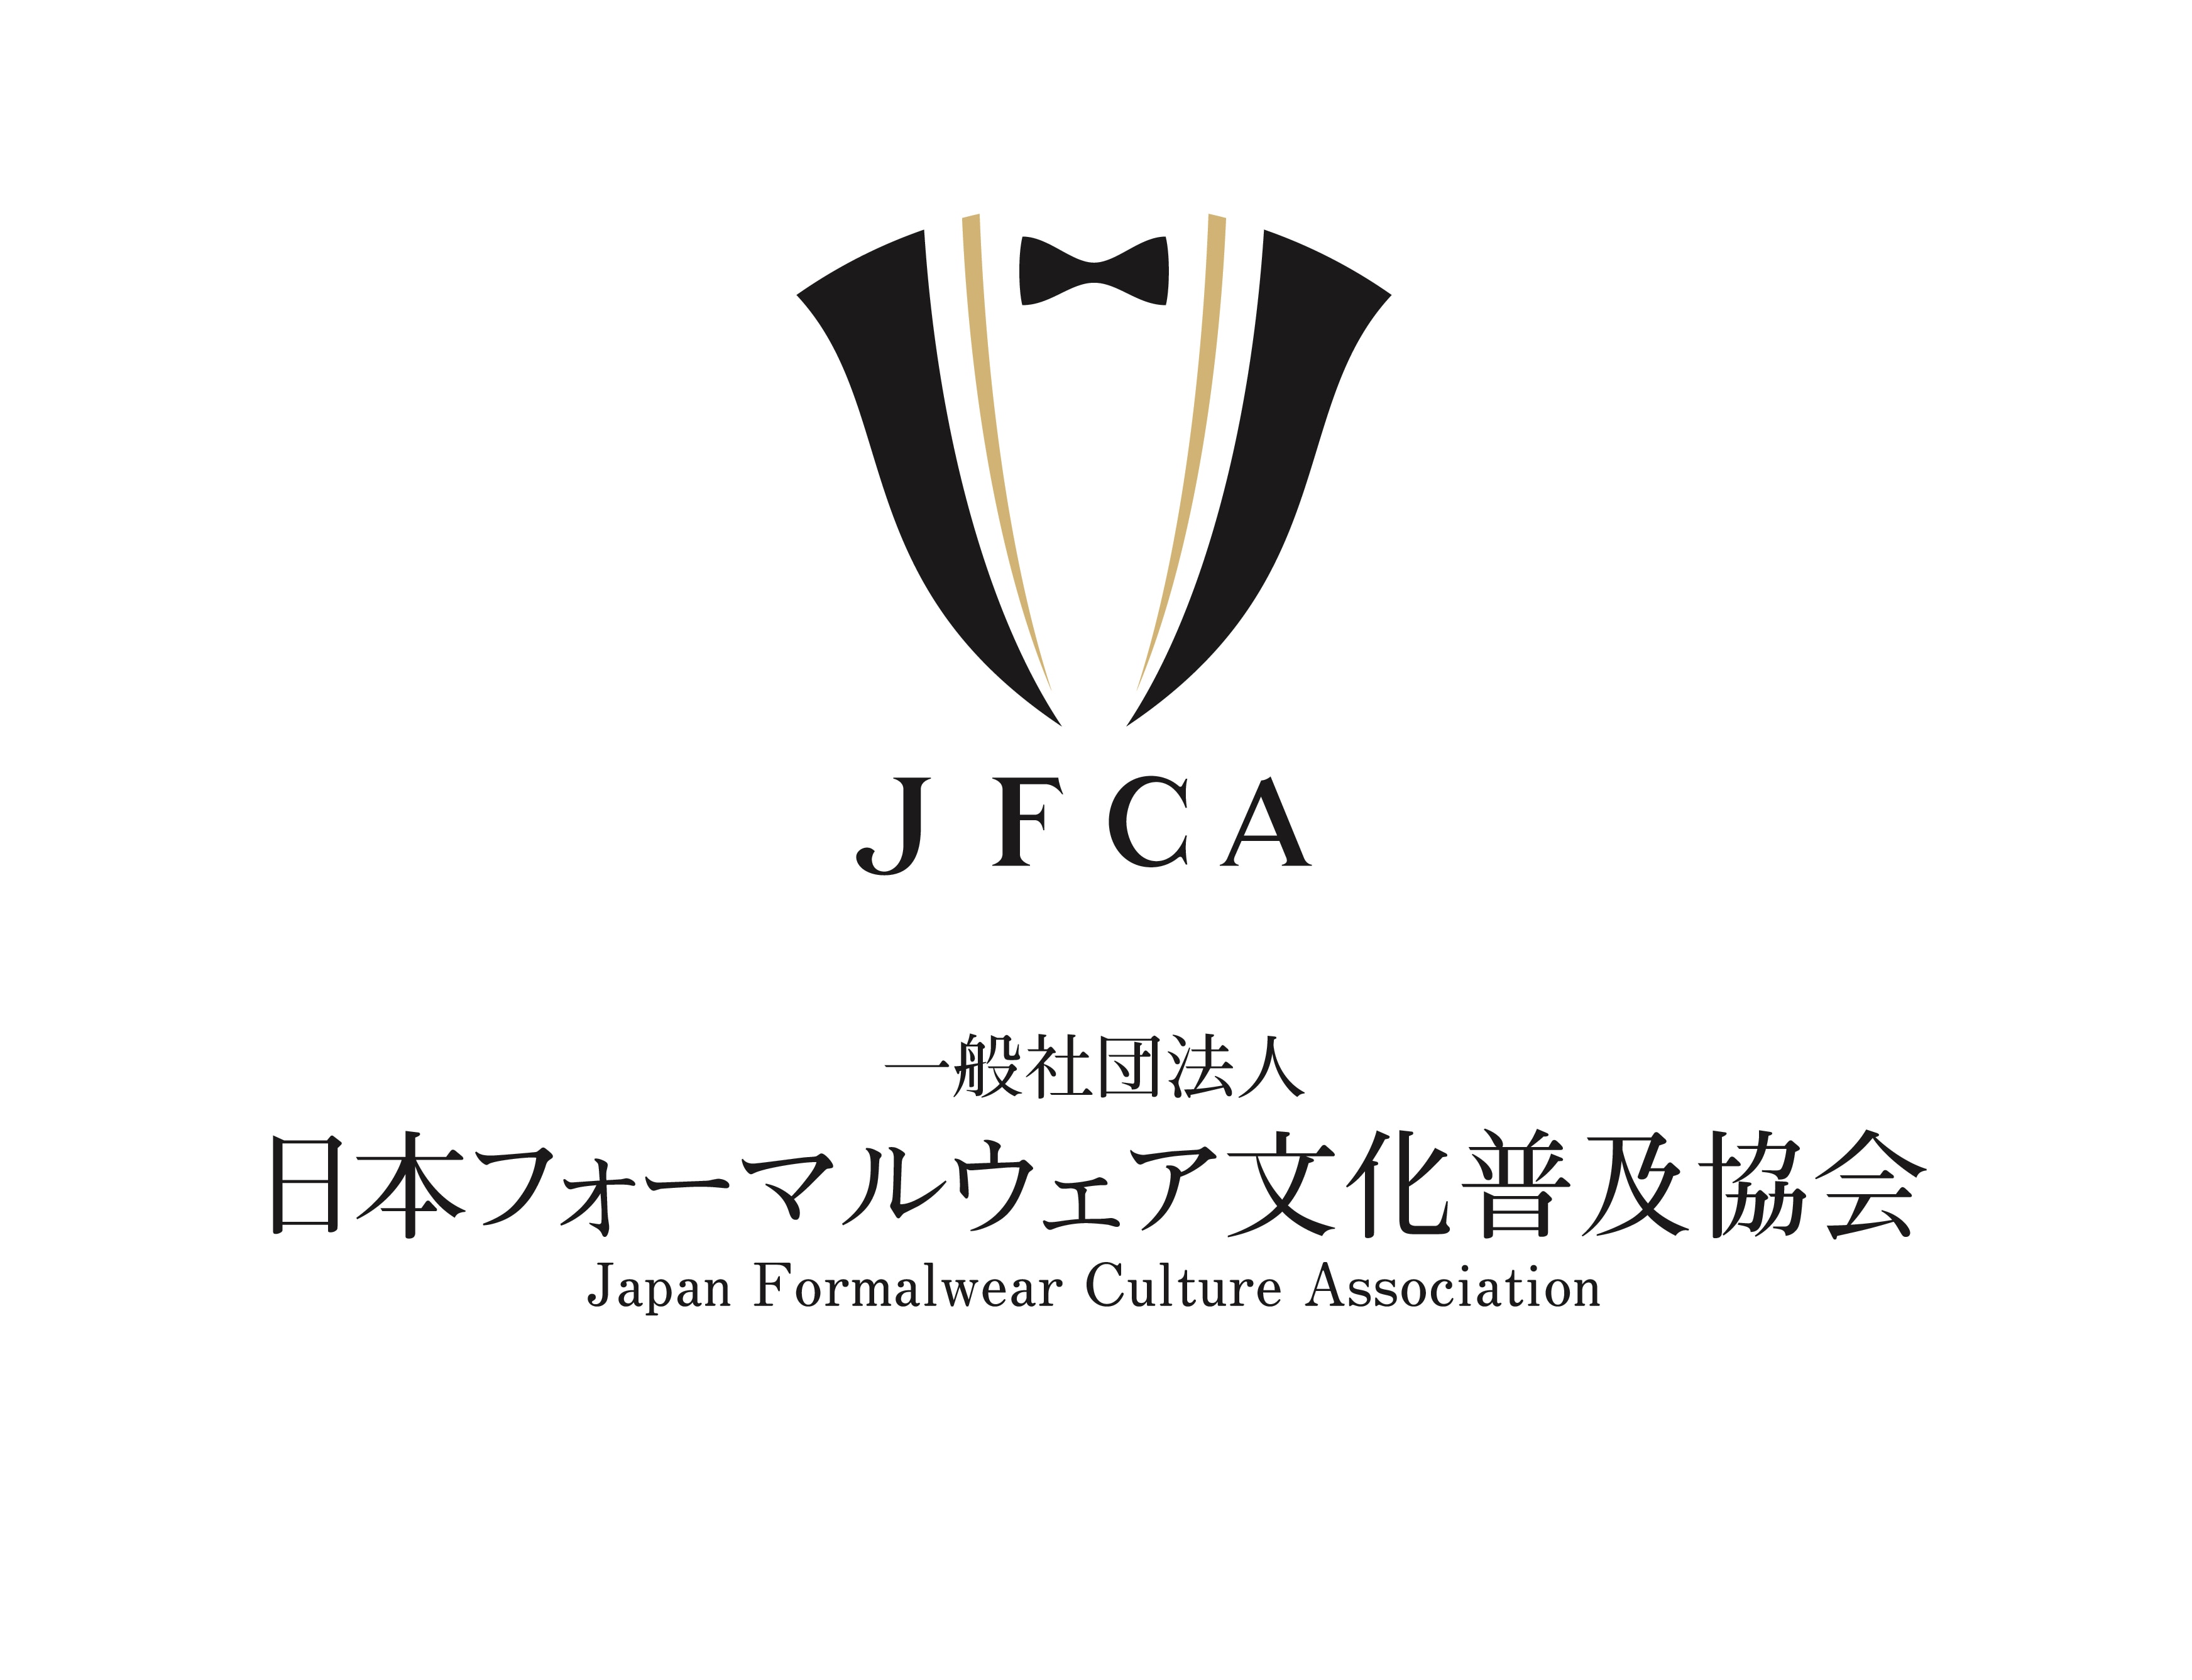 日本フォーマルウェア文化普及協会